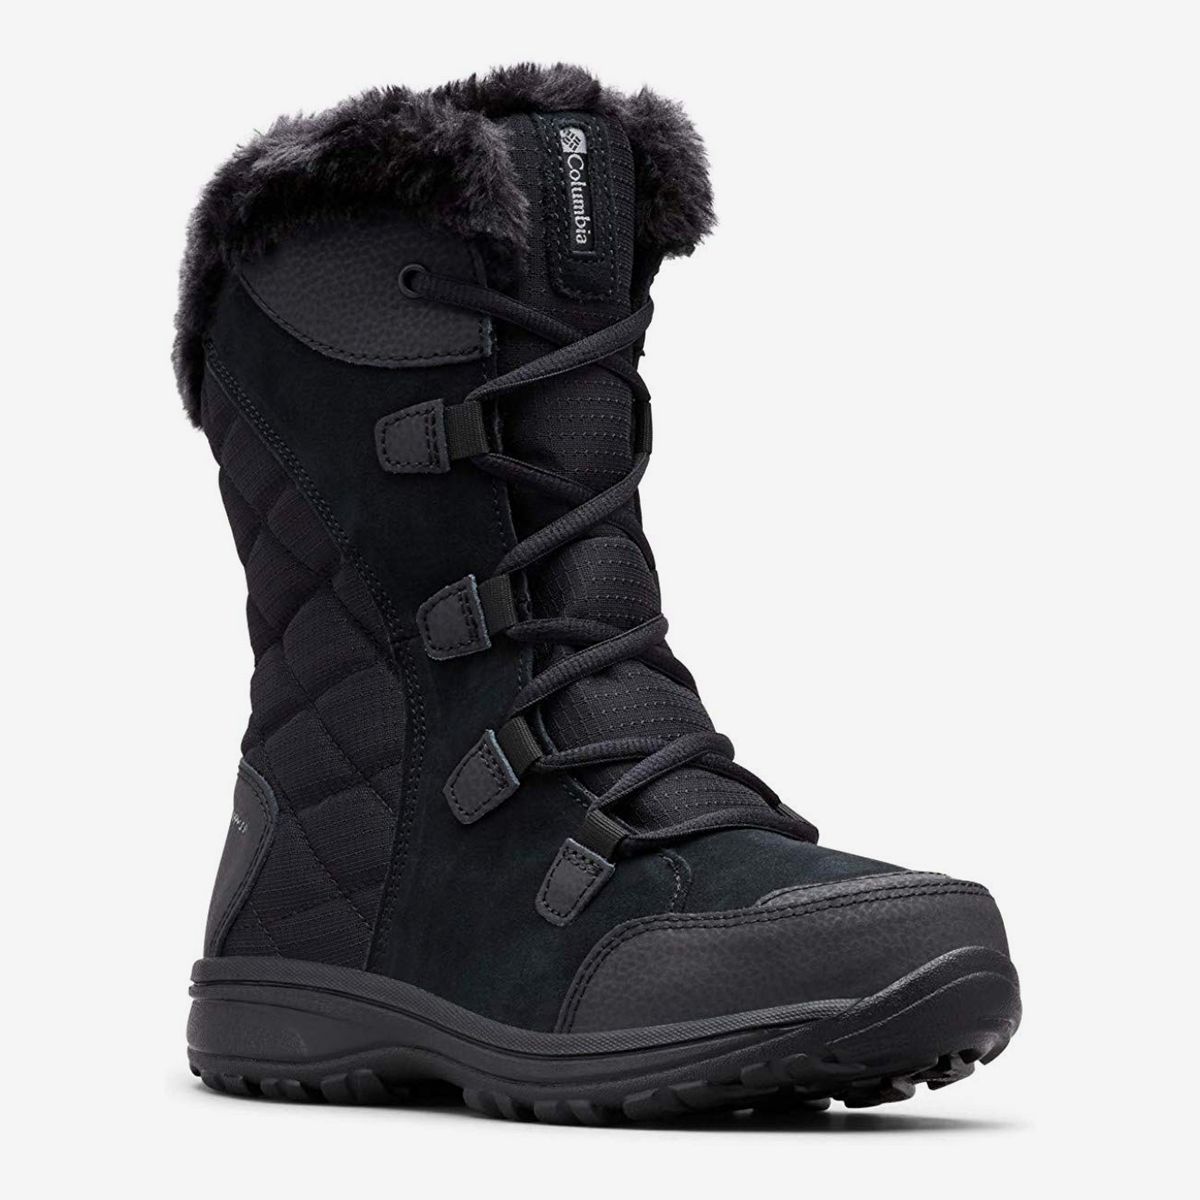 best cheap winter boots